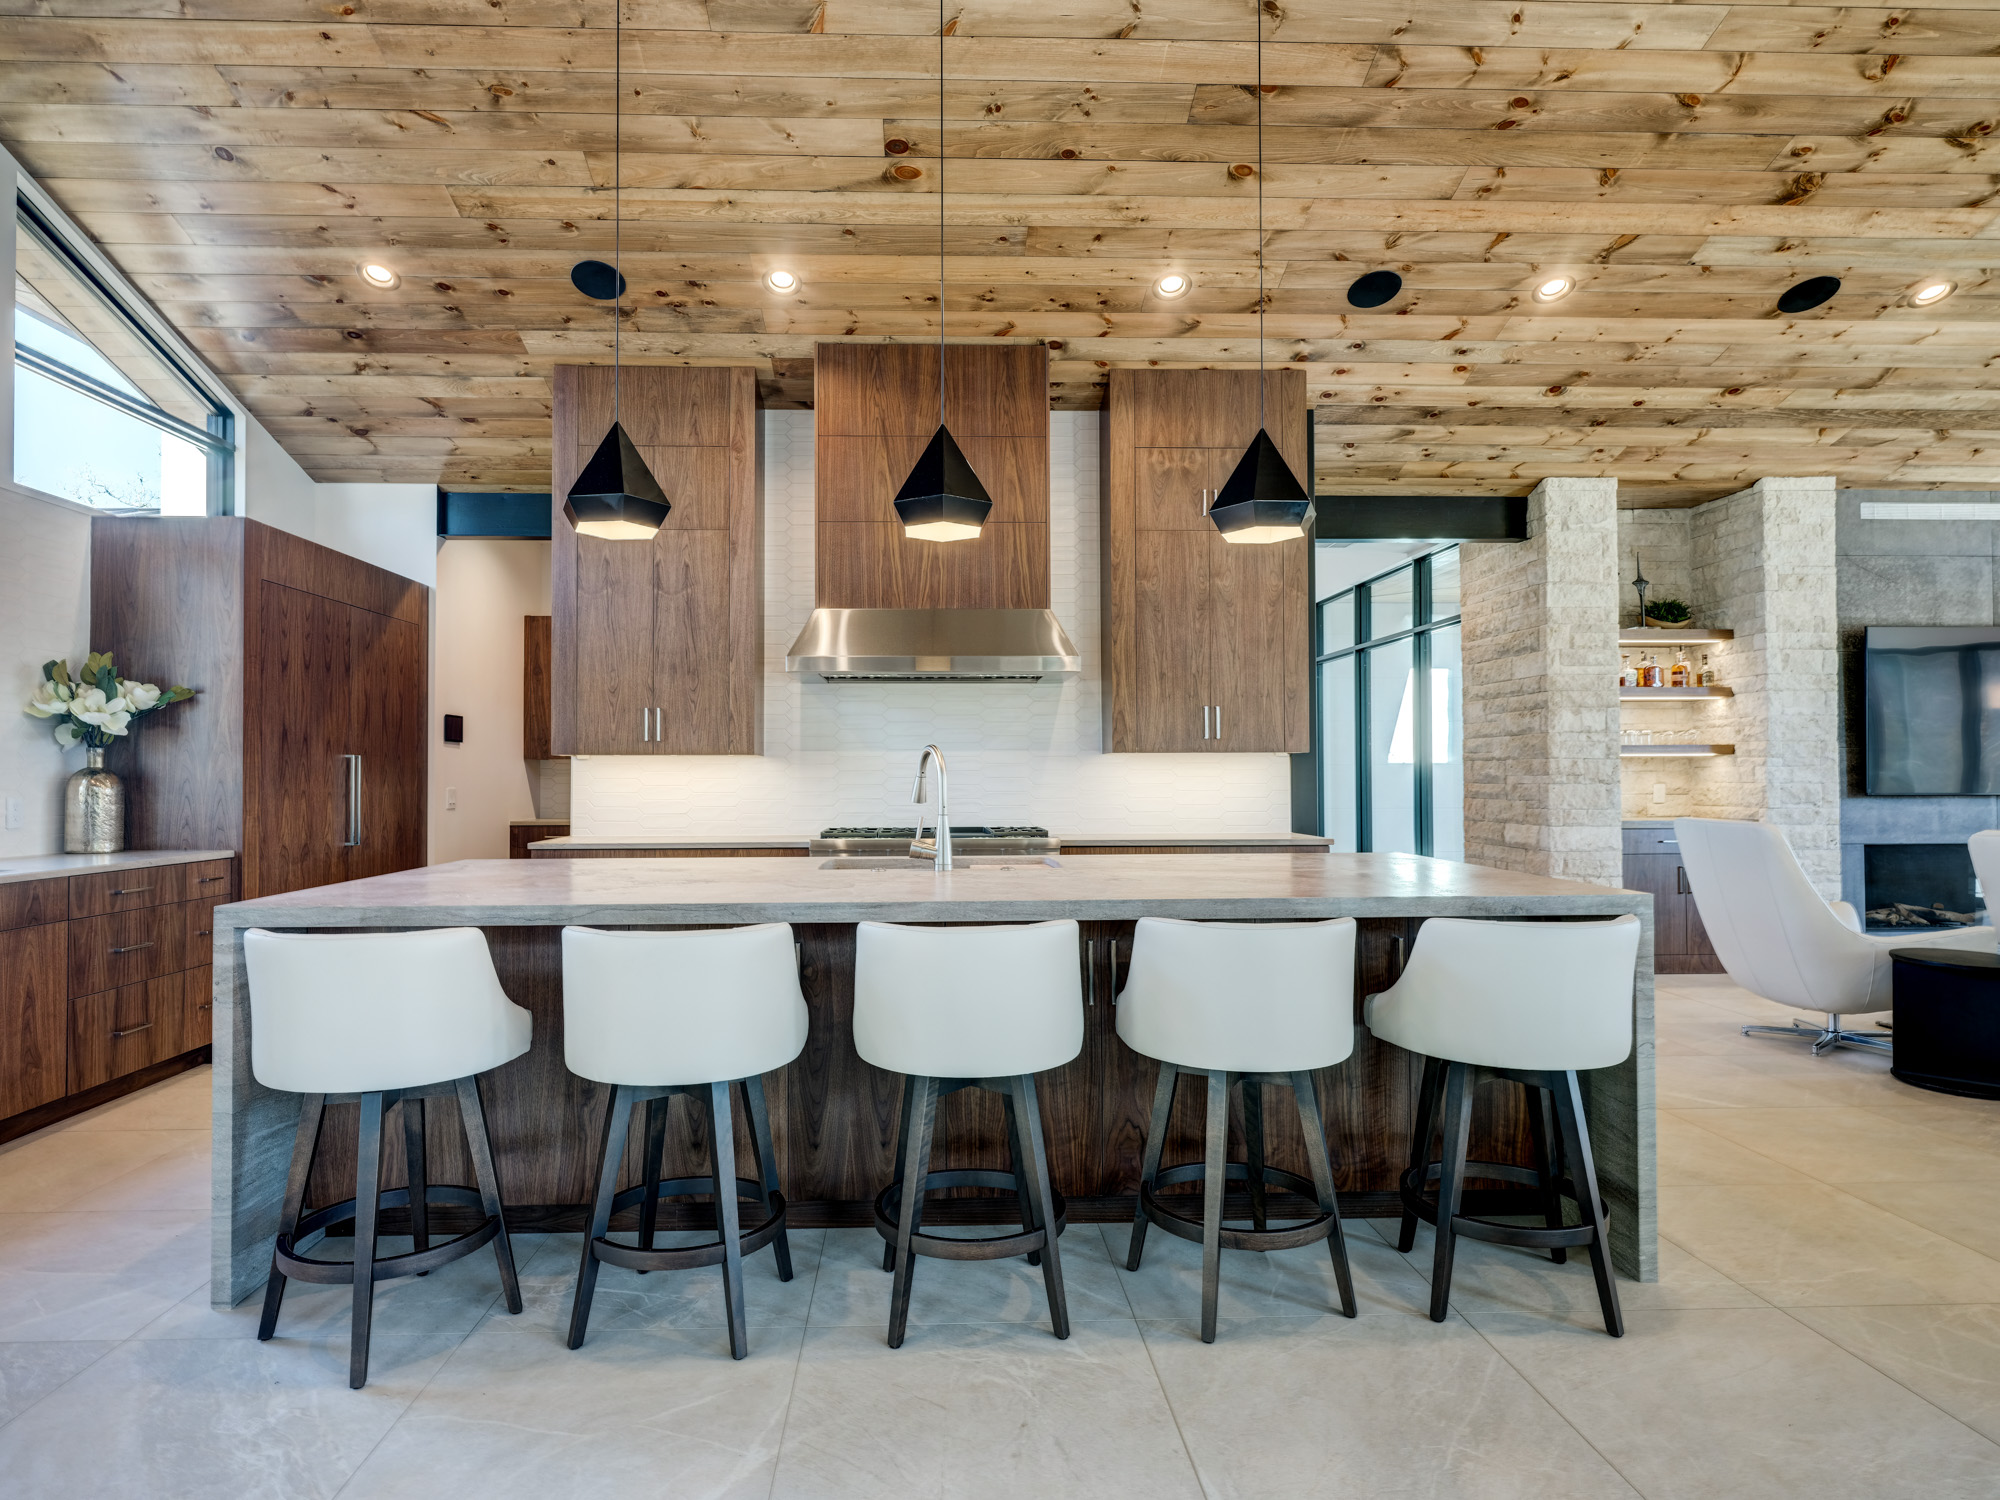 Natural Bridge Home Ellecor Interior Design 44 Kitchen Bar Full View